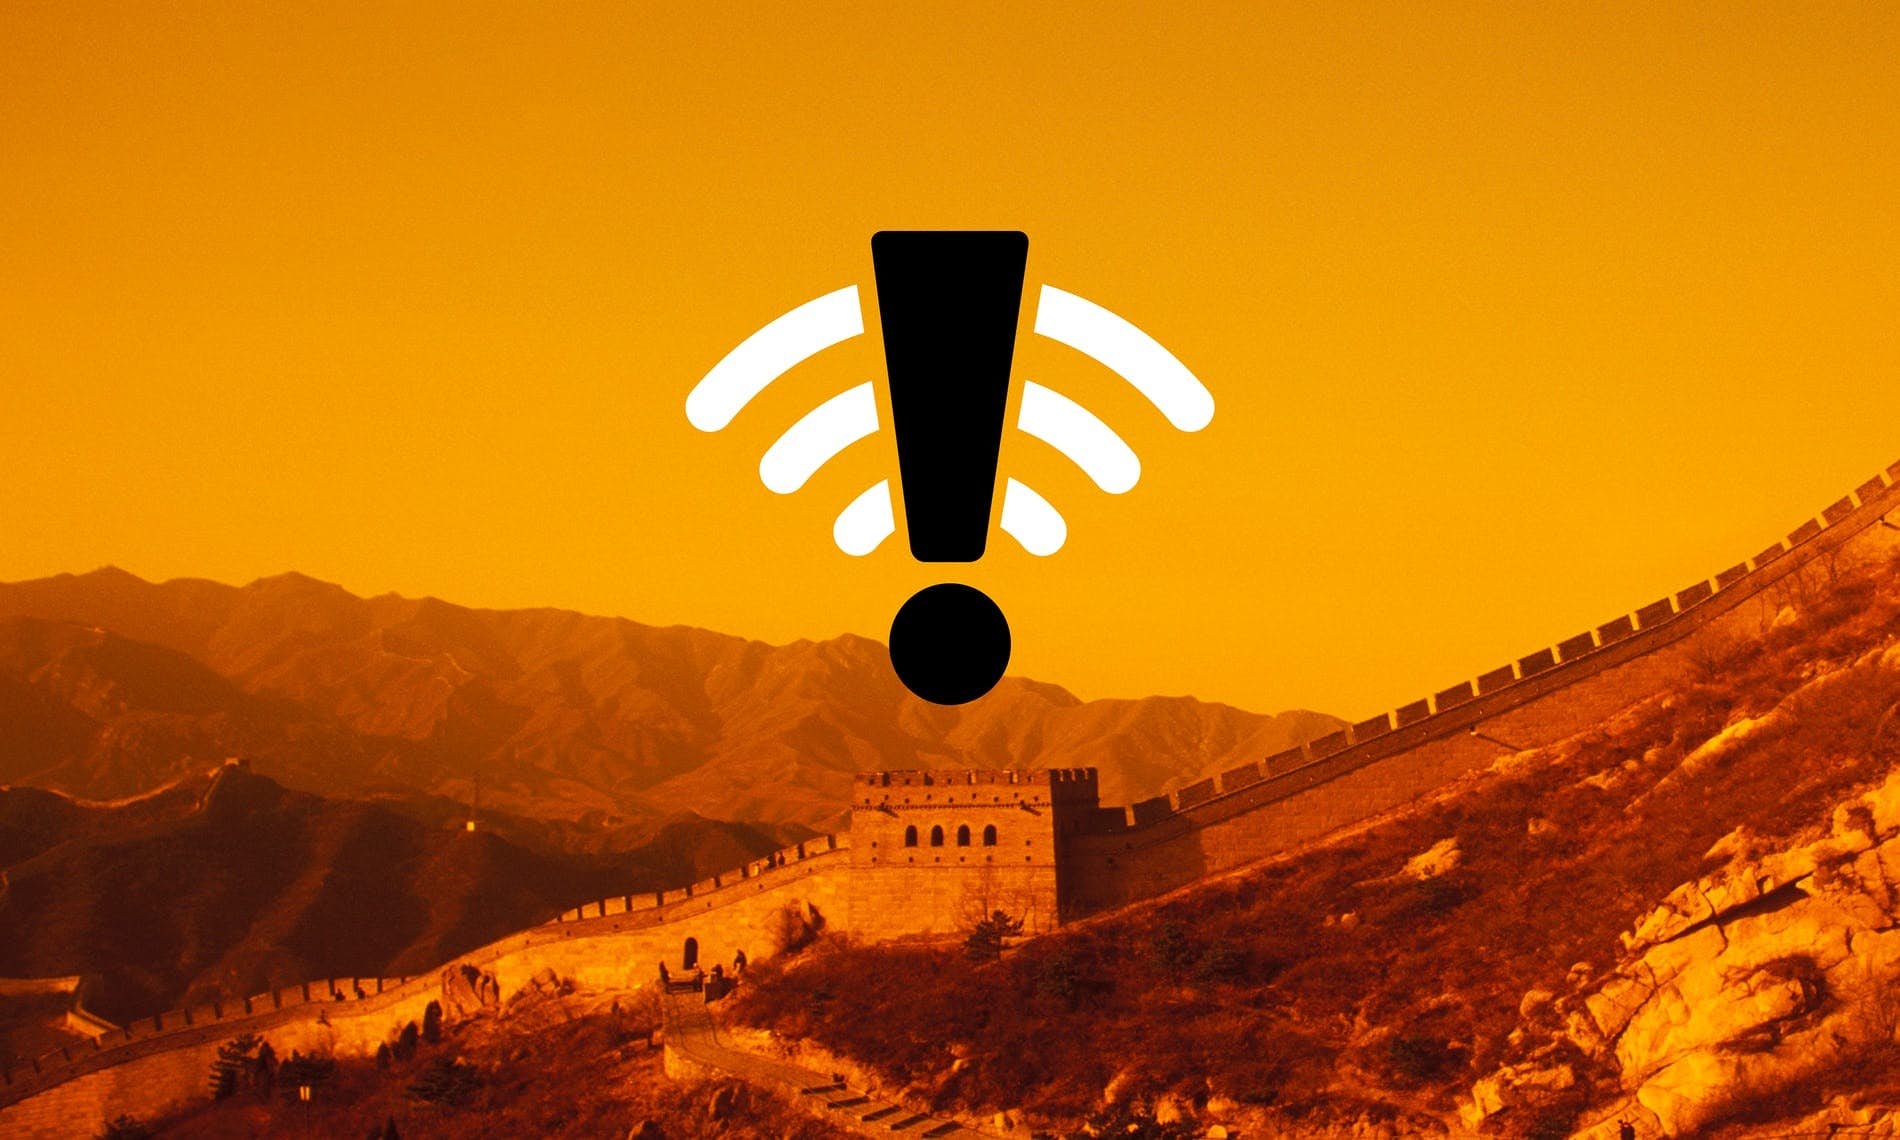 The great firewall of China: Xi Jinping’s internet shutdown